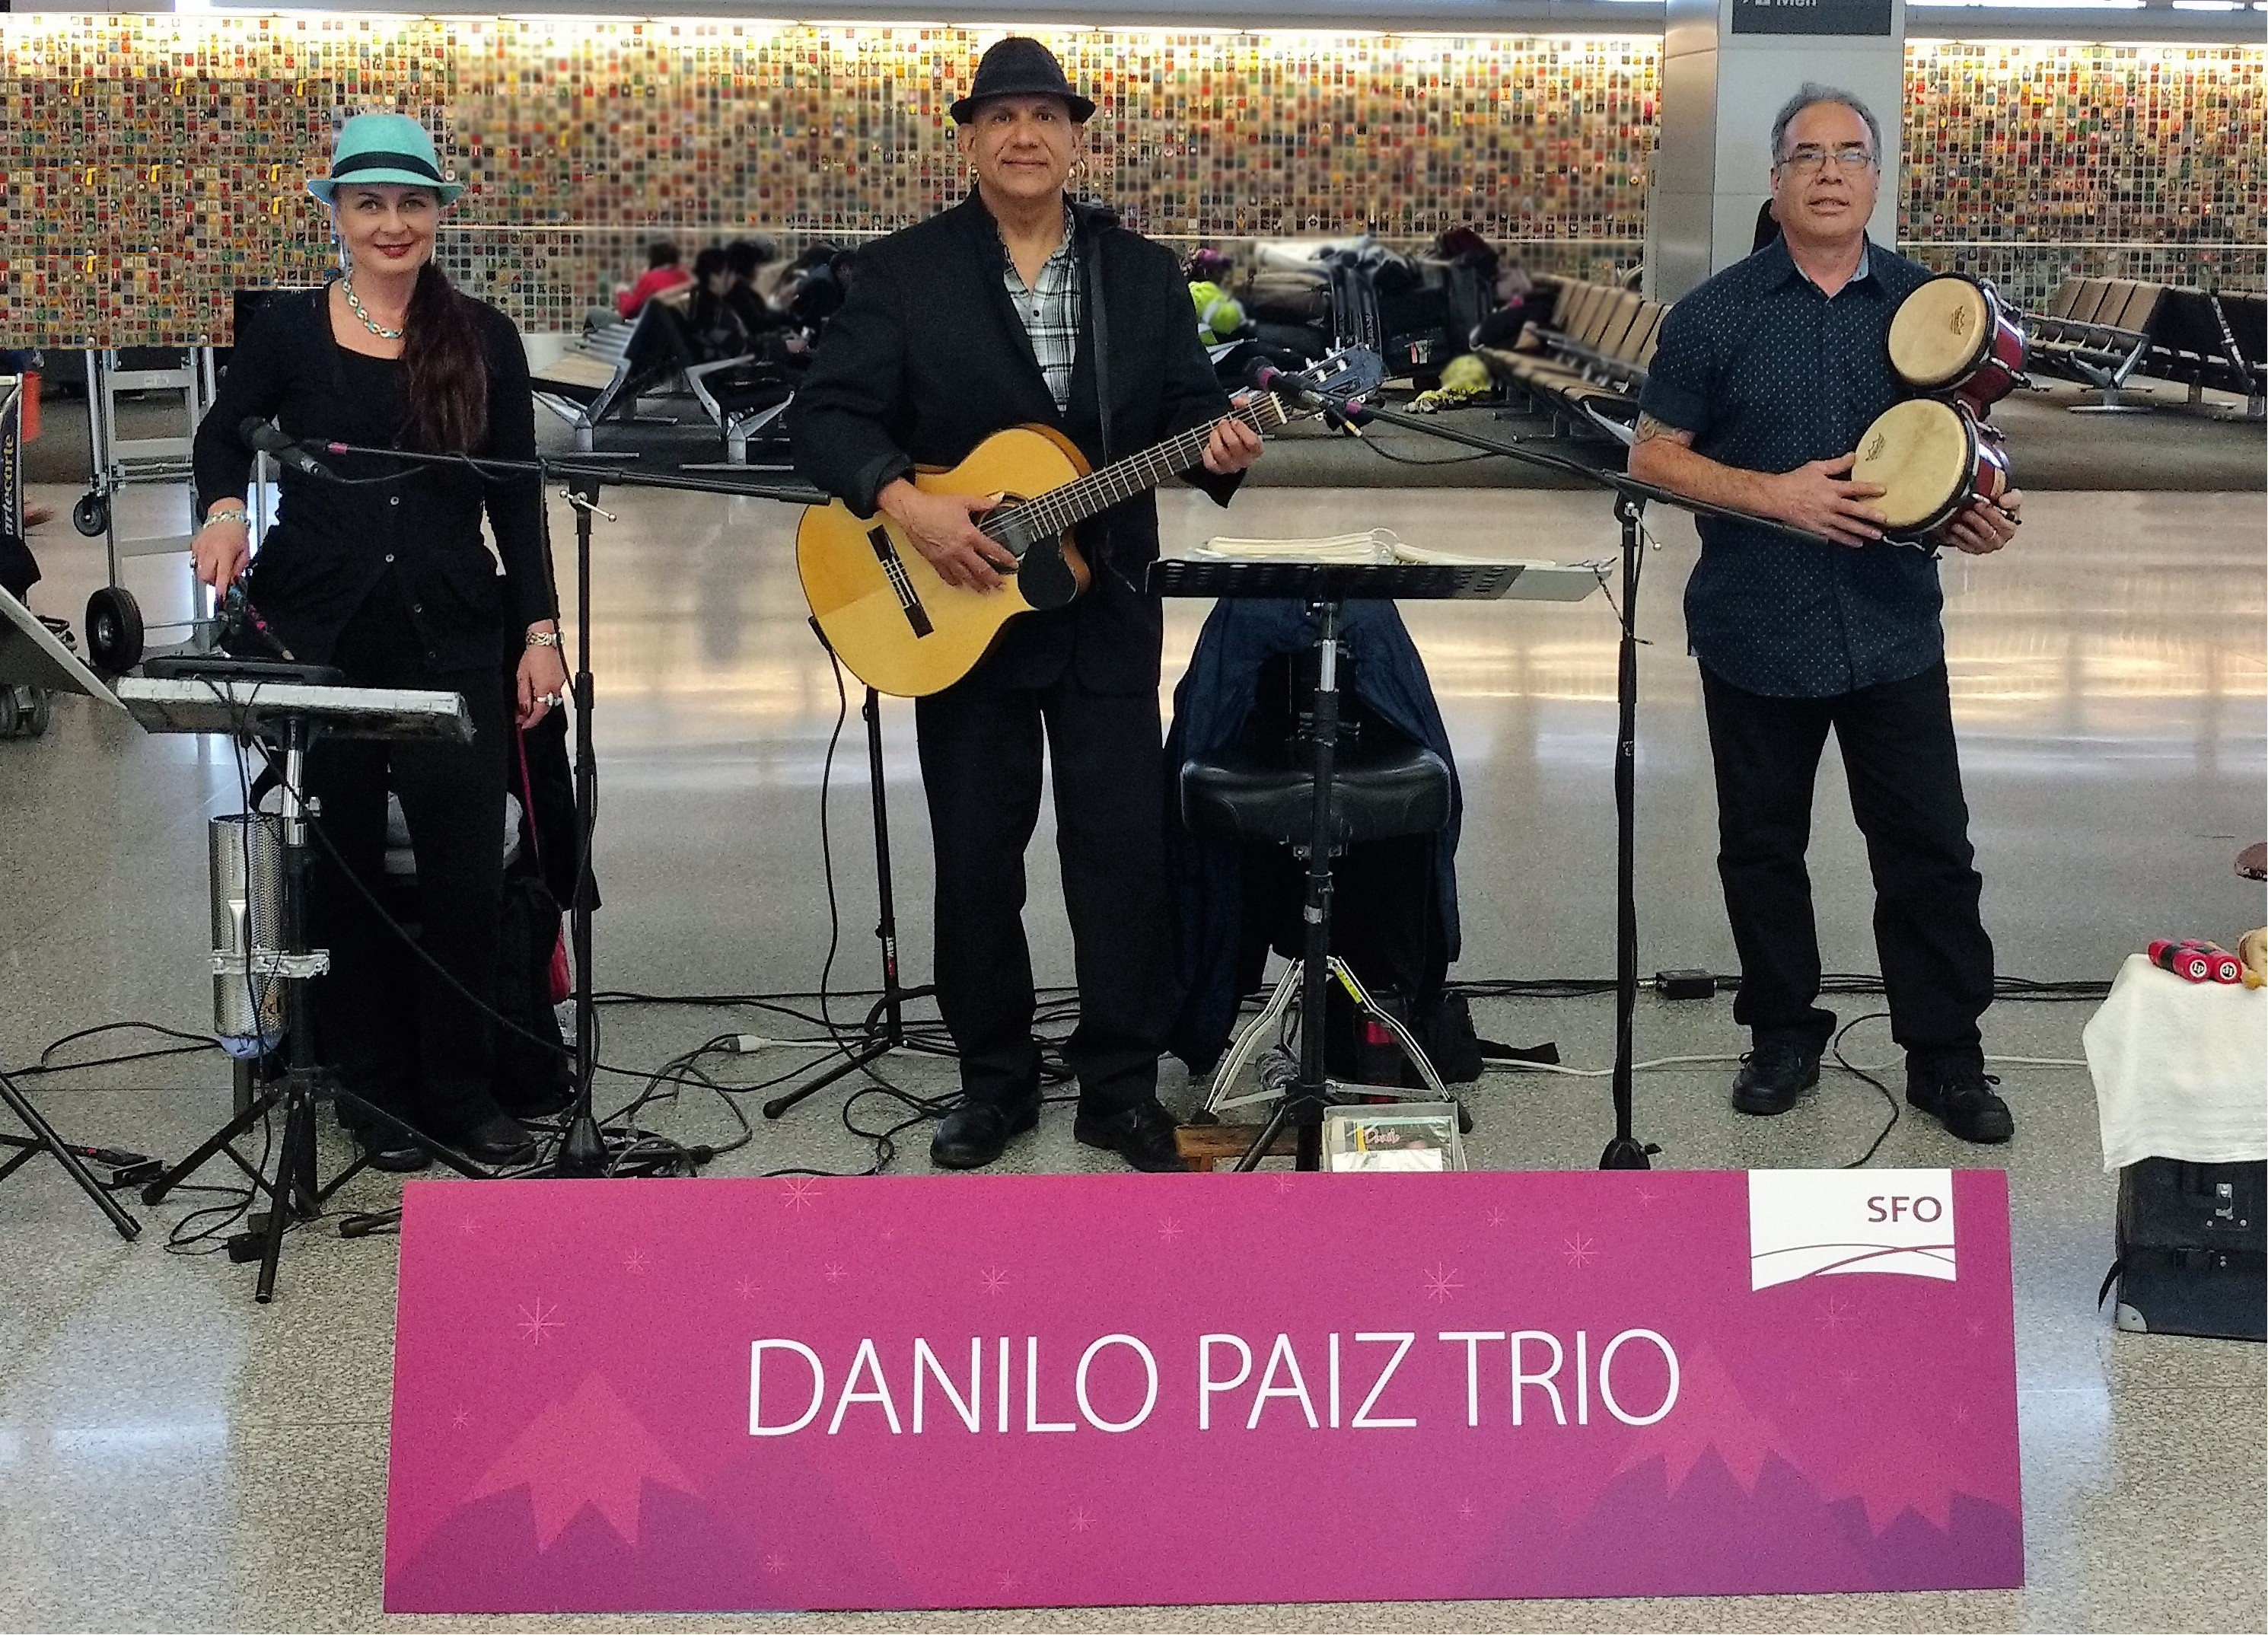 Danilo Paiz Trio